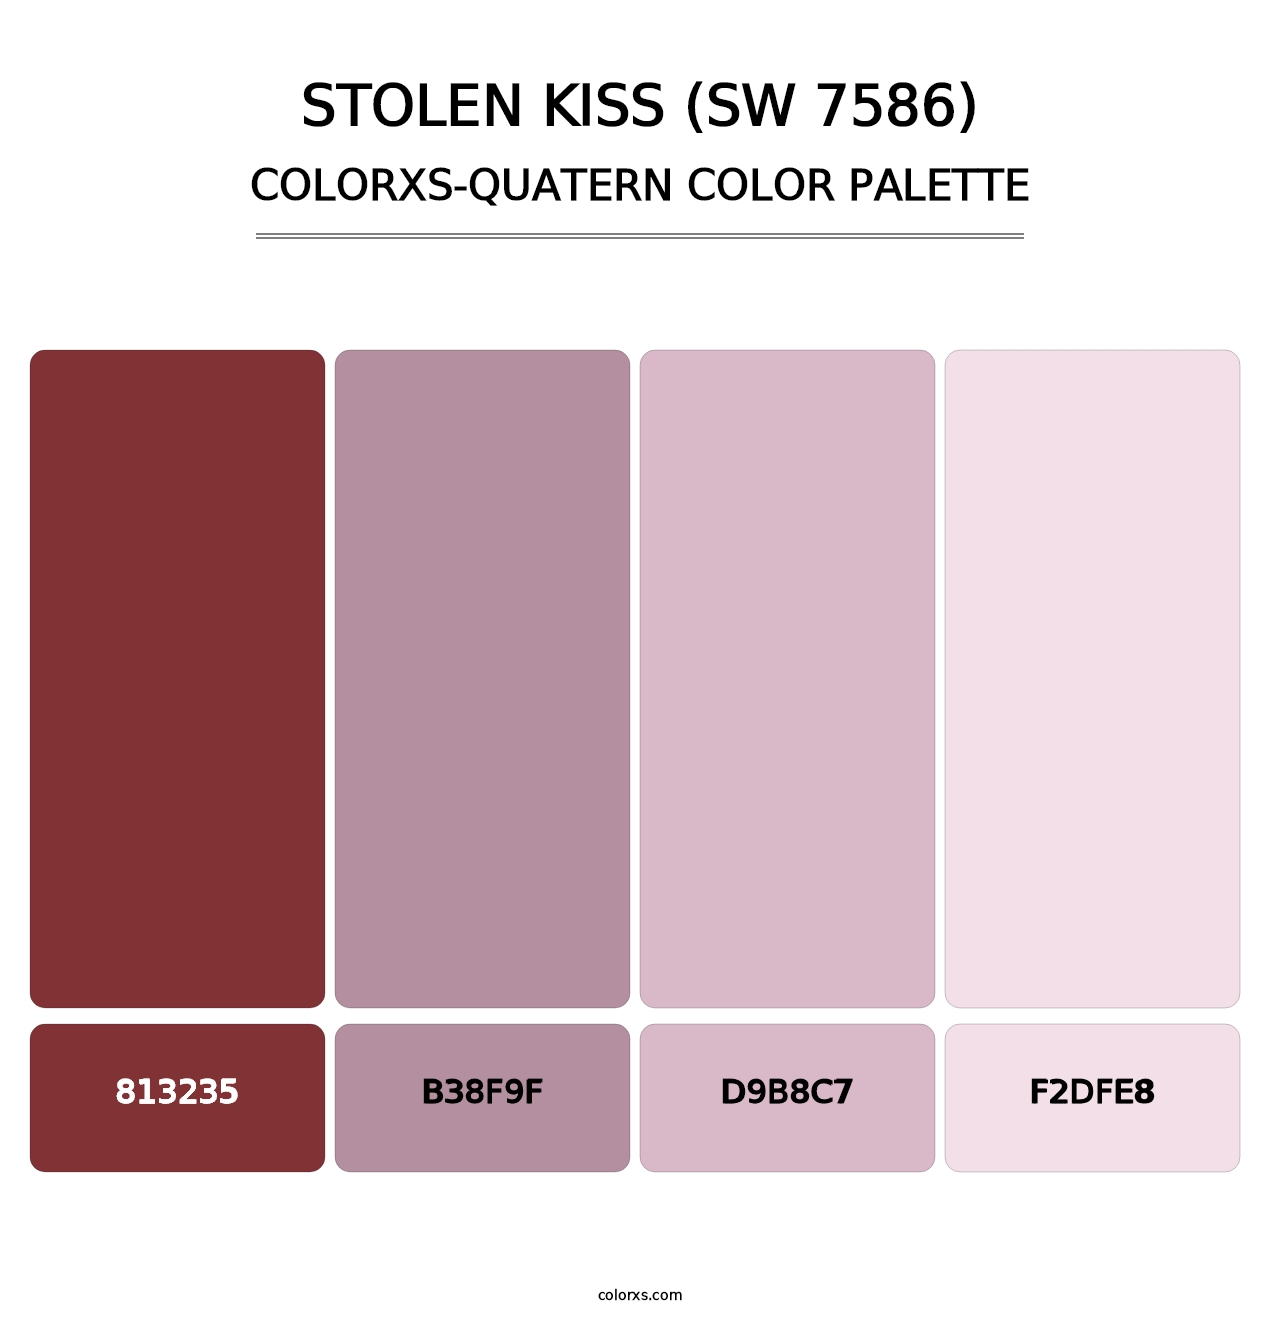 Stolen Kiss (SW 7586) - Colorxs Quatern Palette